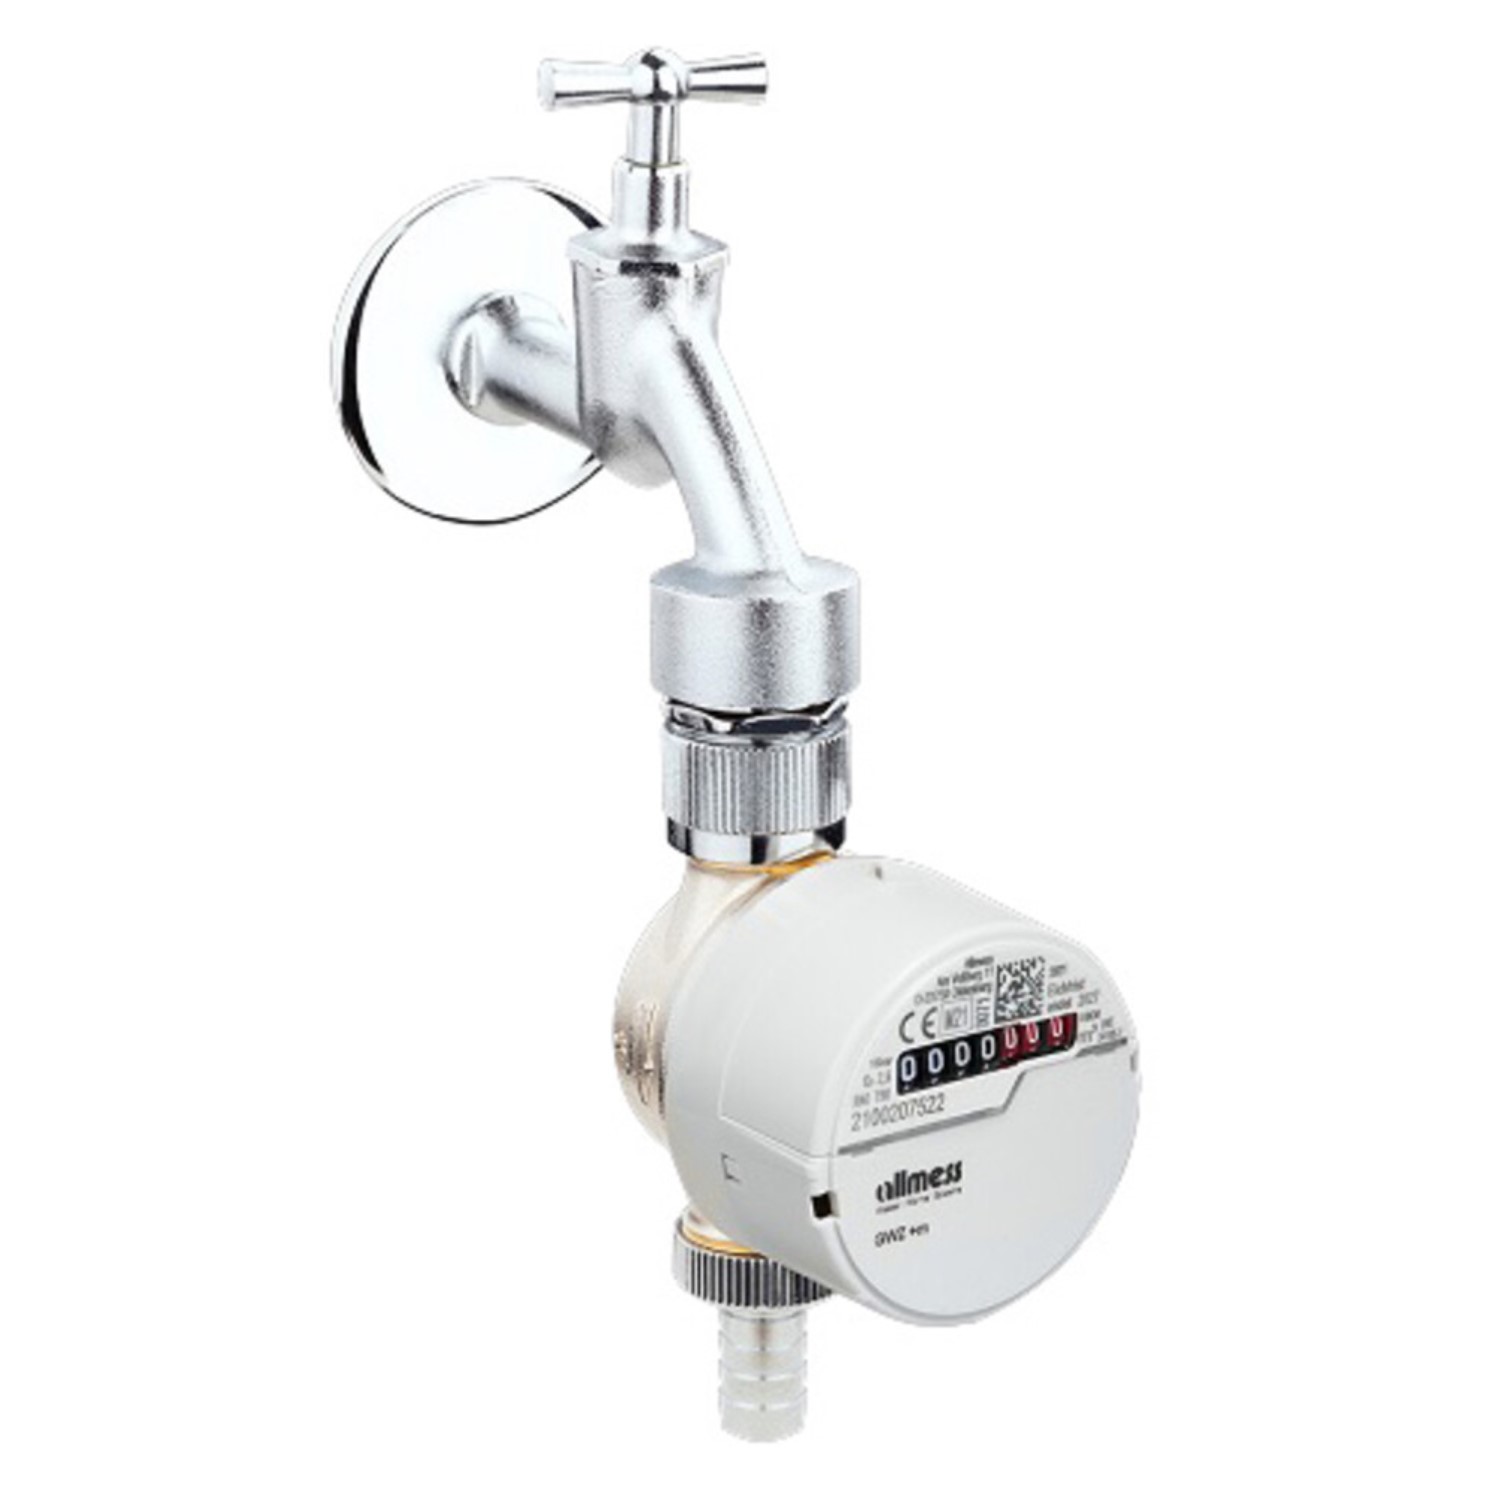 Allmess Zapfventil-Wasserzähler GWZ 3-V +m, 2,5 m³/h, für Wohnungen - 1401932206